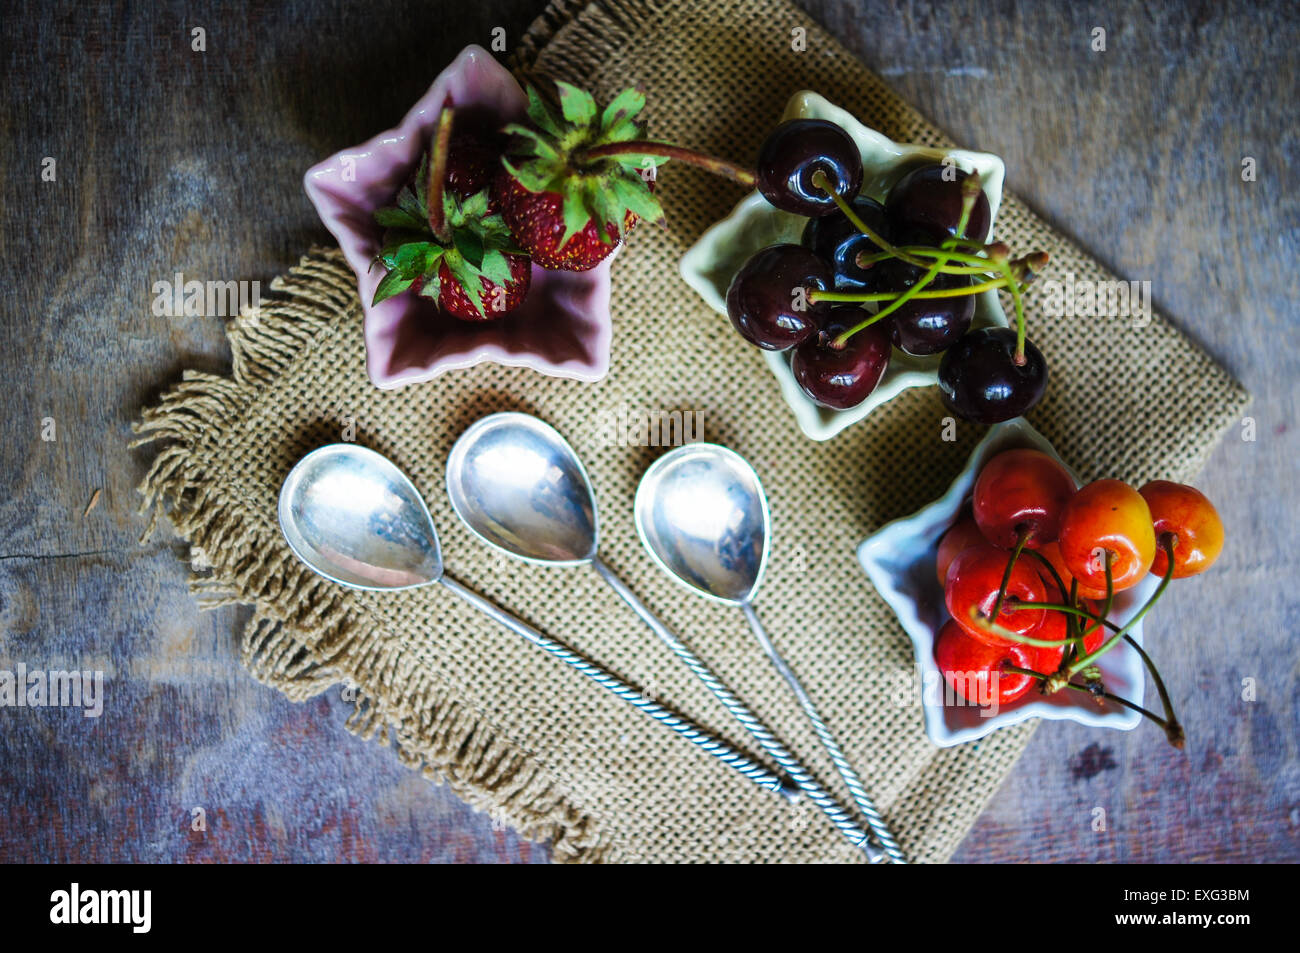 Drei sternförmige Schalen mit frischen saisonalen Früchten - Erdbeere und zwei Arten von Kirschen Stockfoto